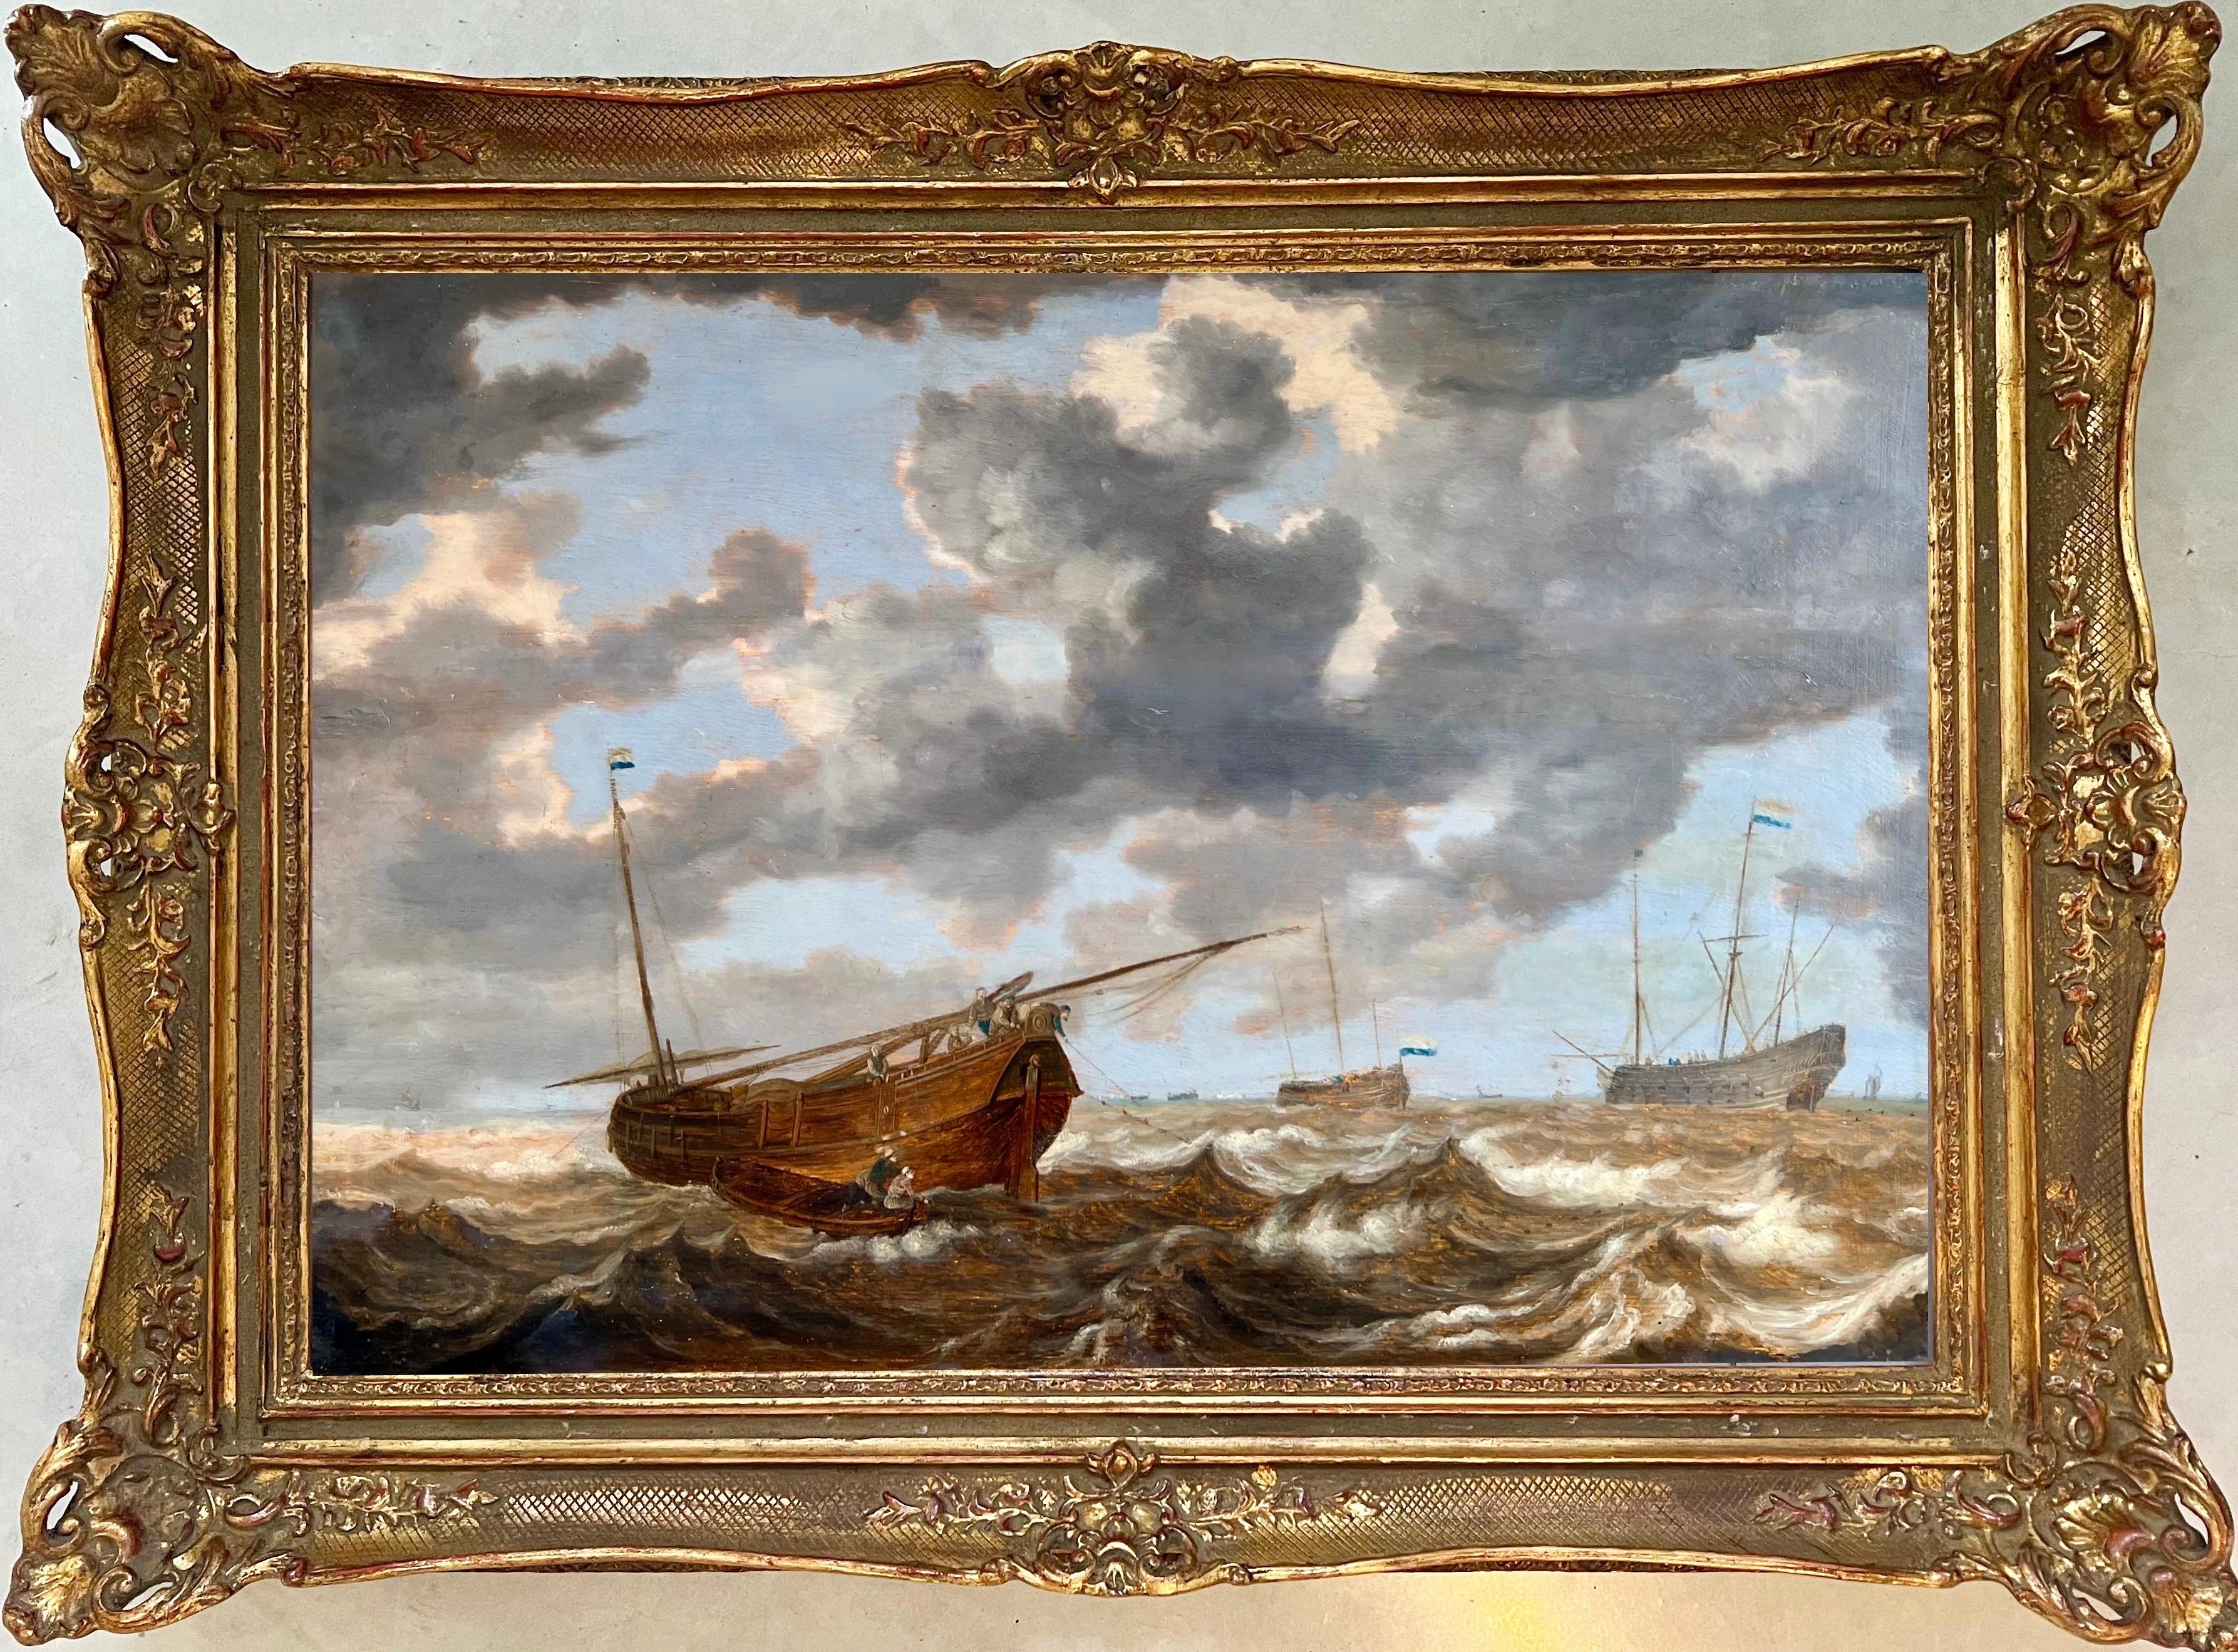 Niederländisches Seestück aus dem 17. Jahrhundert - Stürmische See mit einer holländischen Hoy - Marineboote – Painting von Julius Porcellis